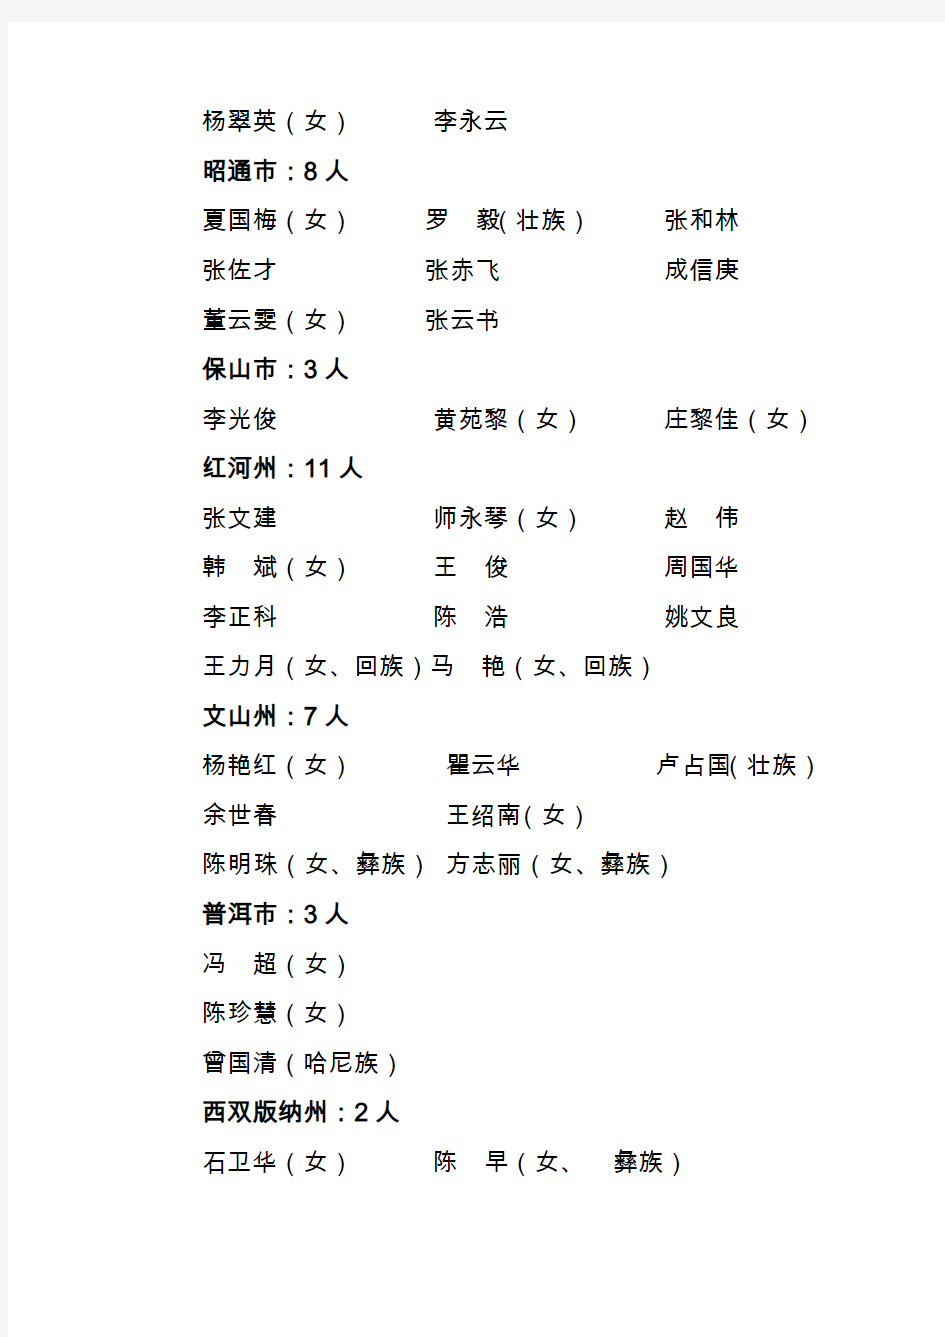 2010年云南省特级教师评选结果公示